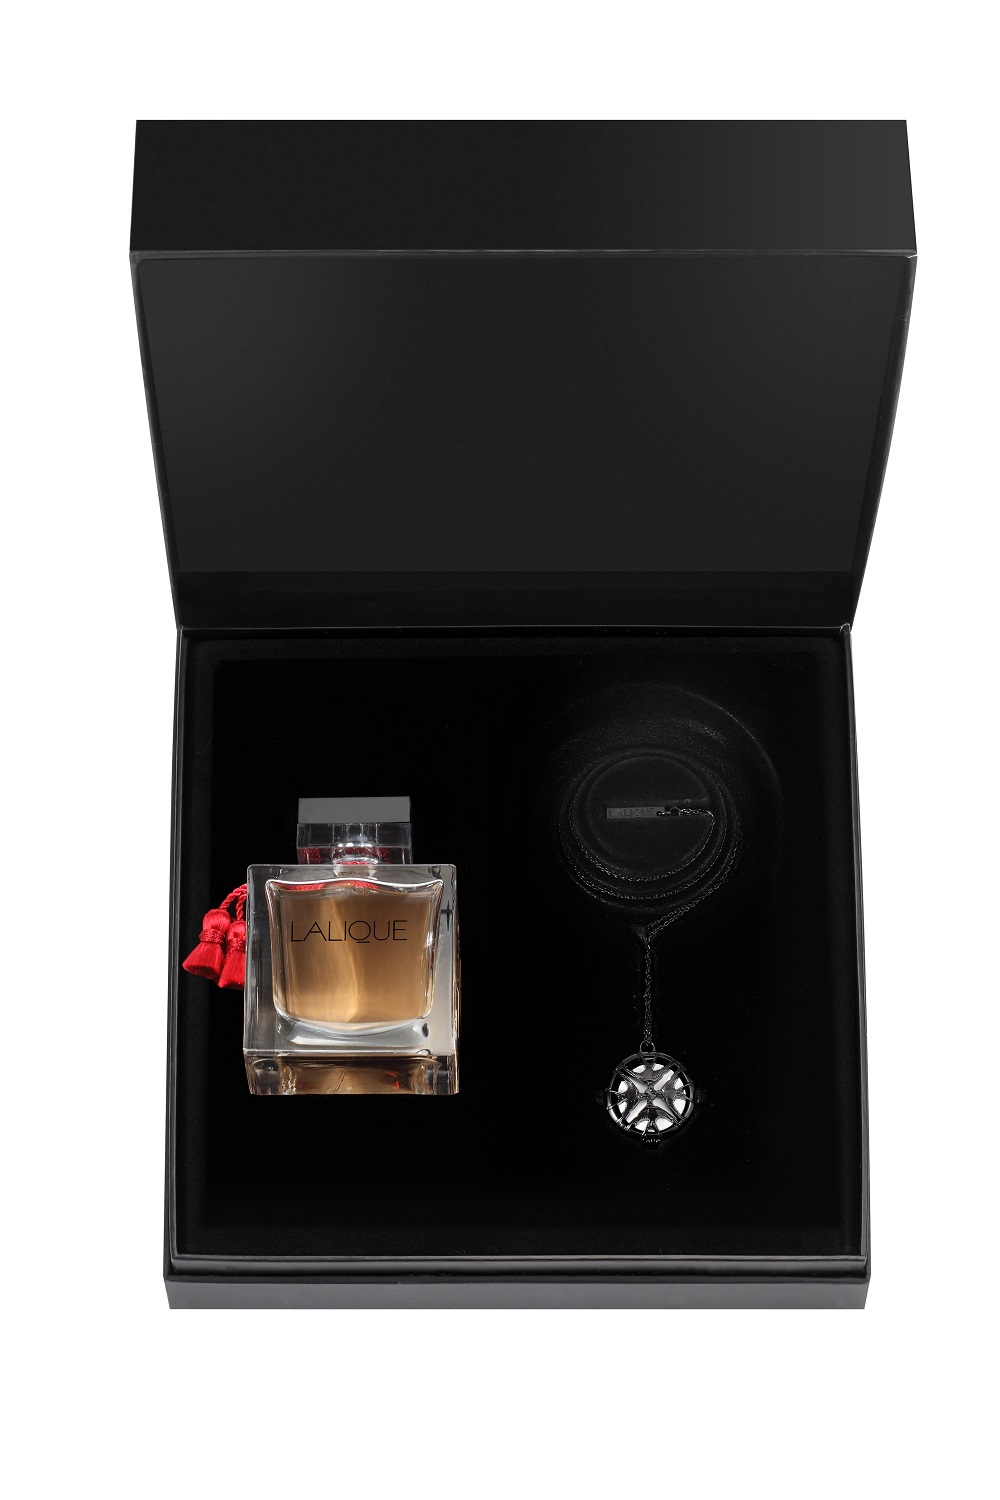 Lalique Parfum Eau De Parfum 100ml Gift Set